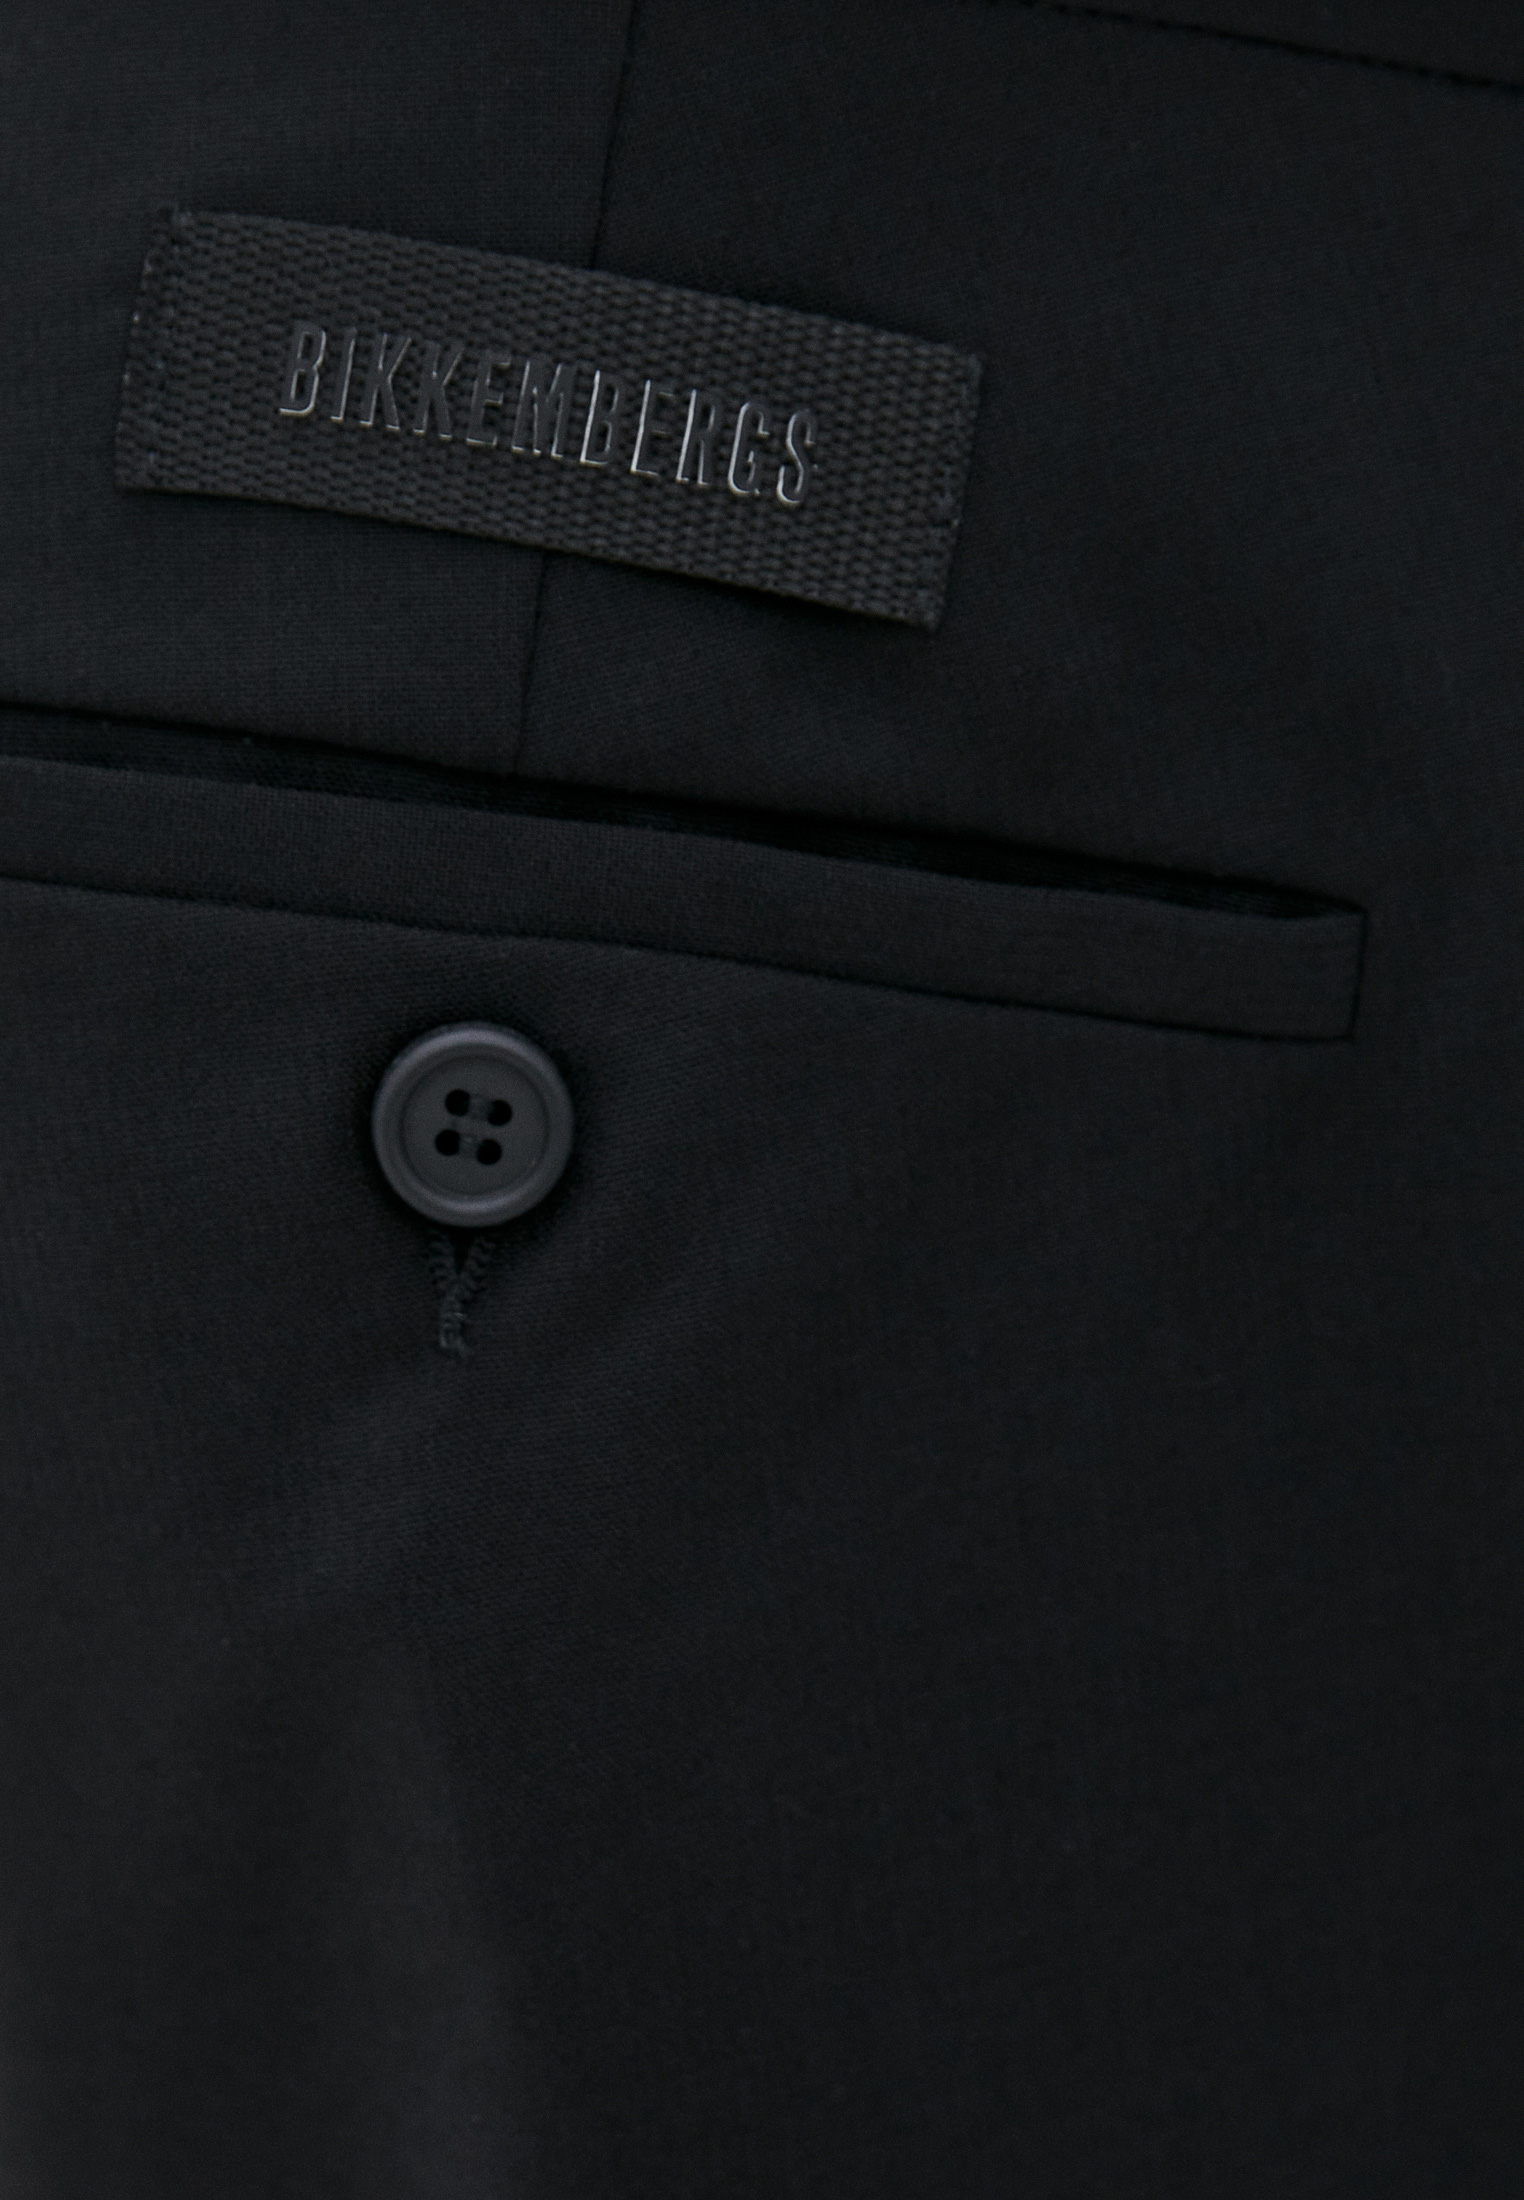 Мужские классические брюки Bikkembergs (Биккембергс) C P 001 00 S 3452: изображение 10